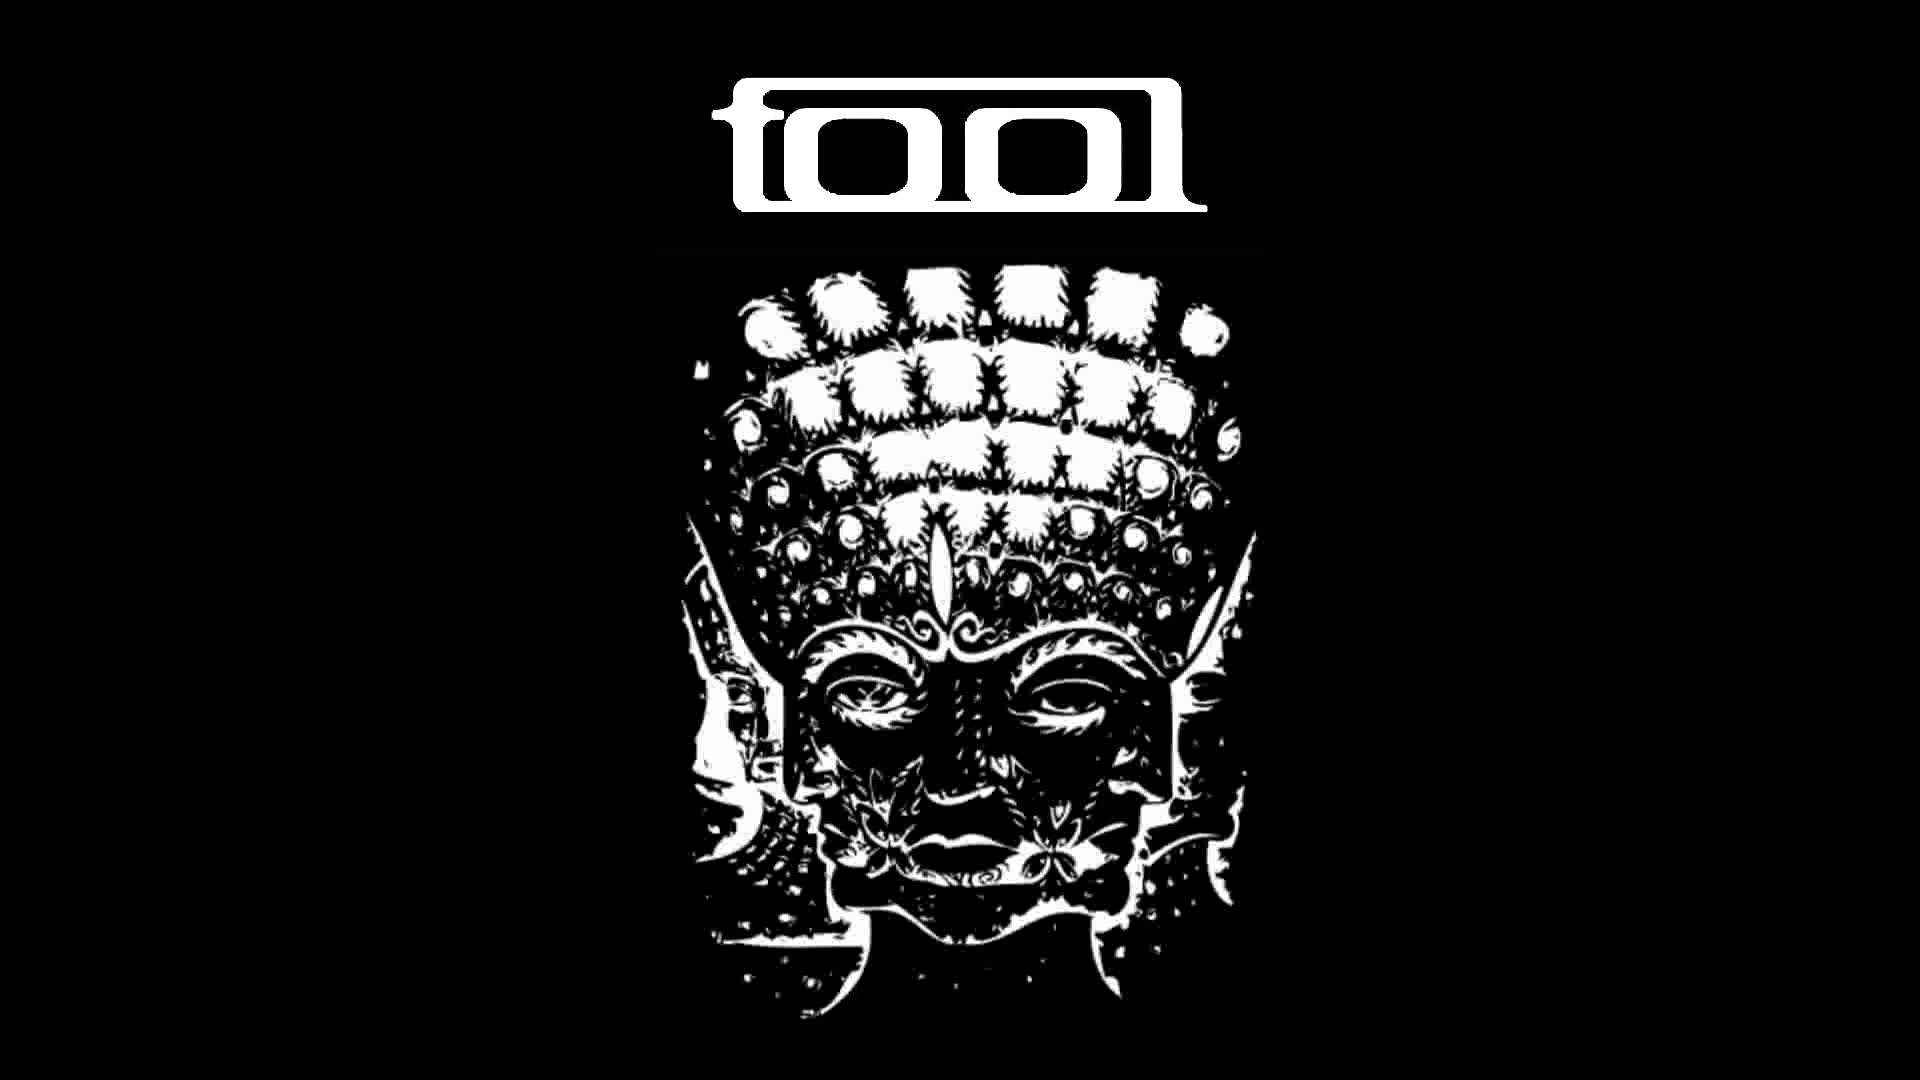 tool 10000 days album art